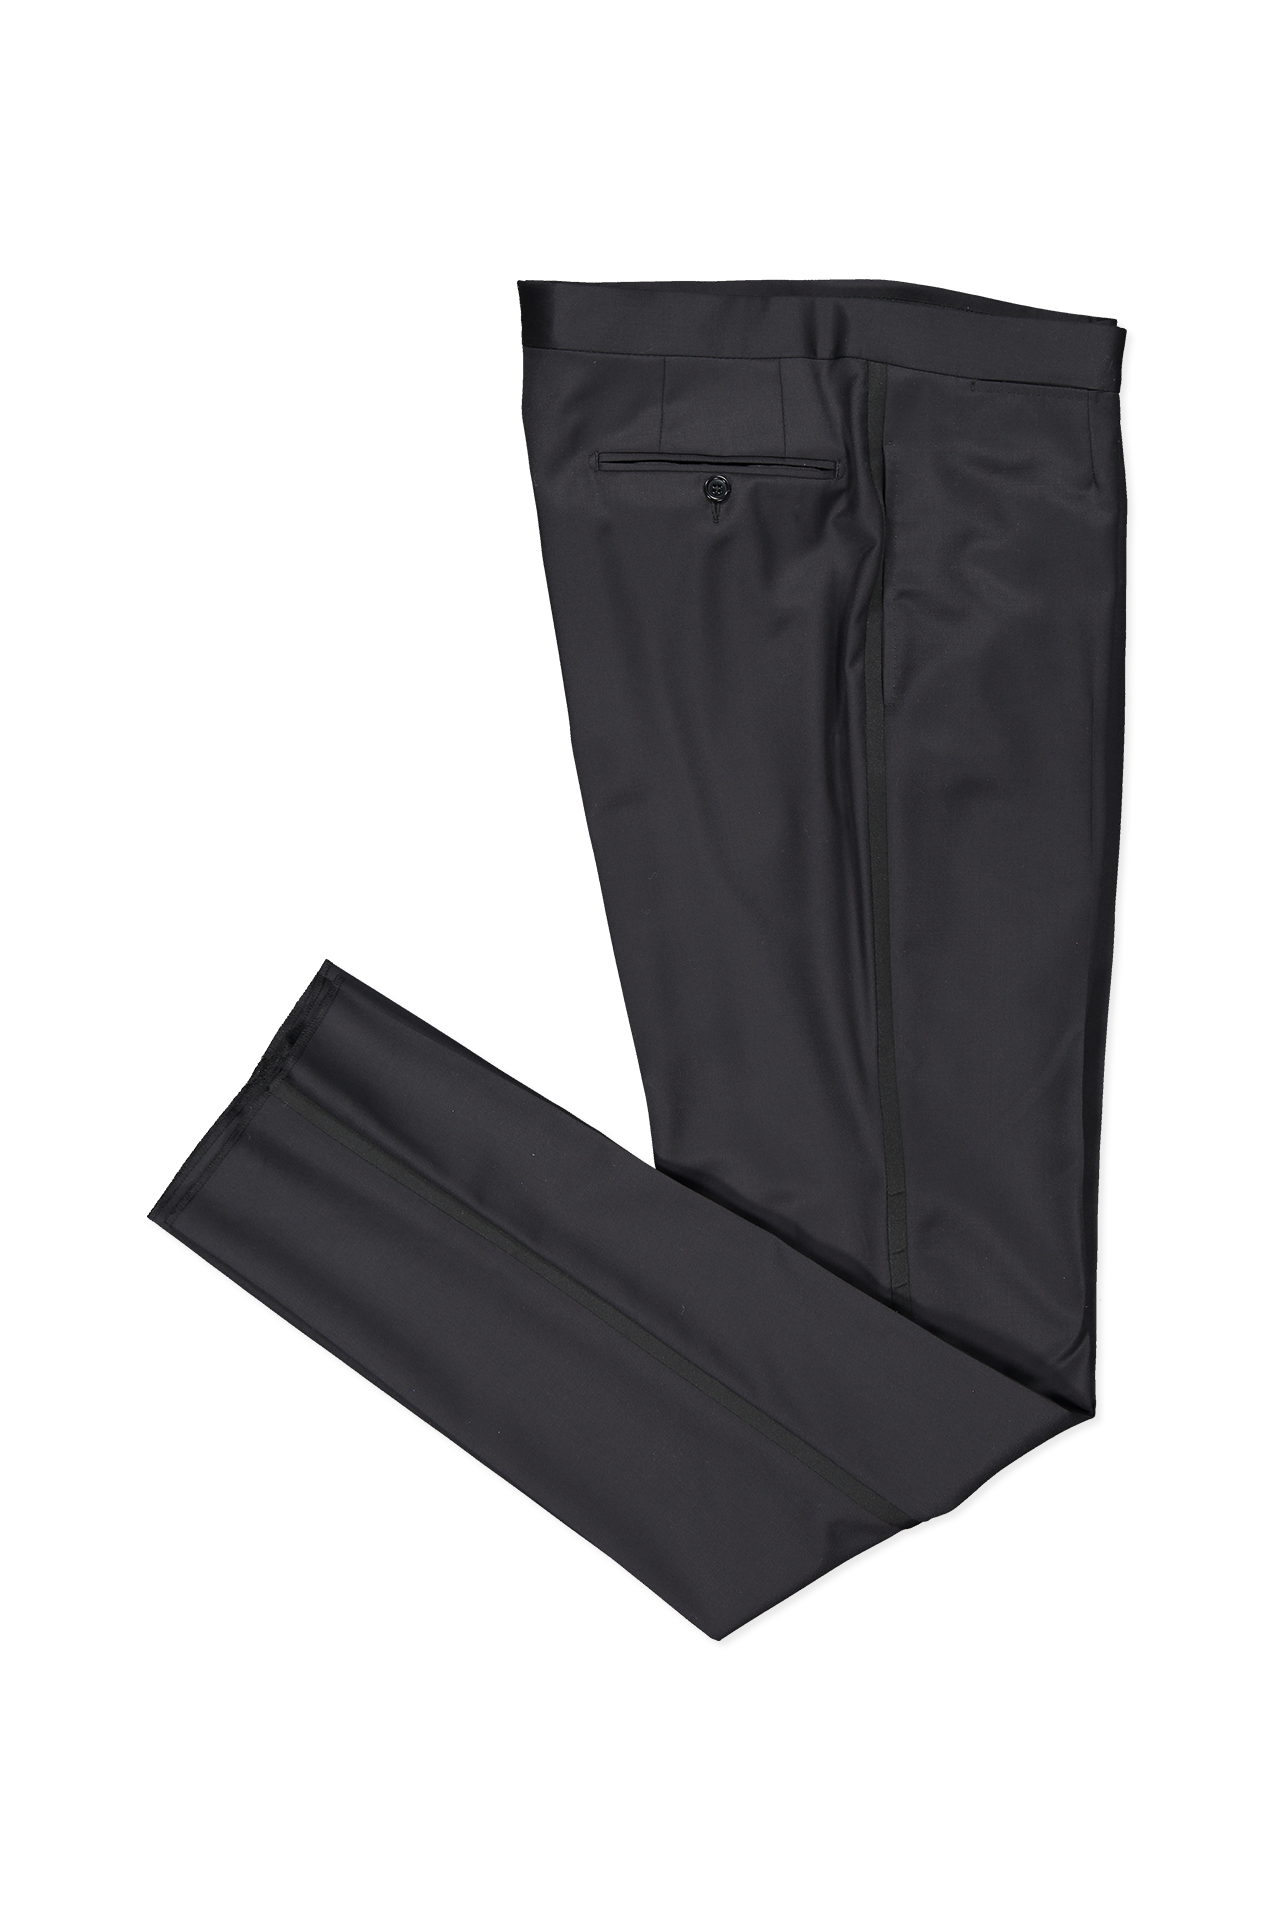 Zegna Micronsphere Tuxedo Black Folded Leg Image (4371186450547)